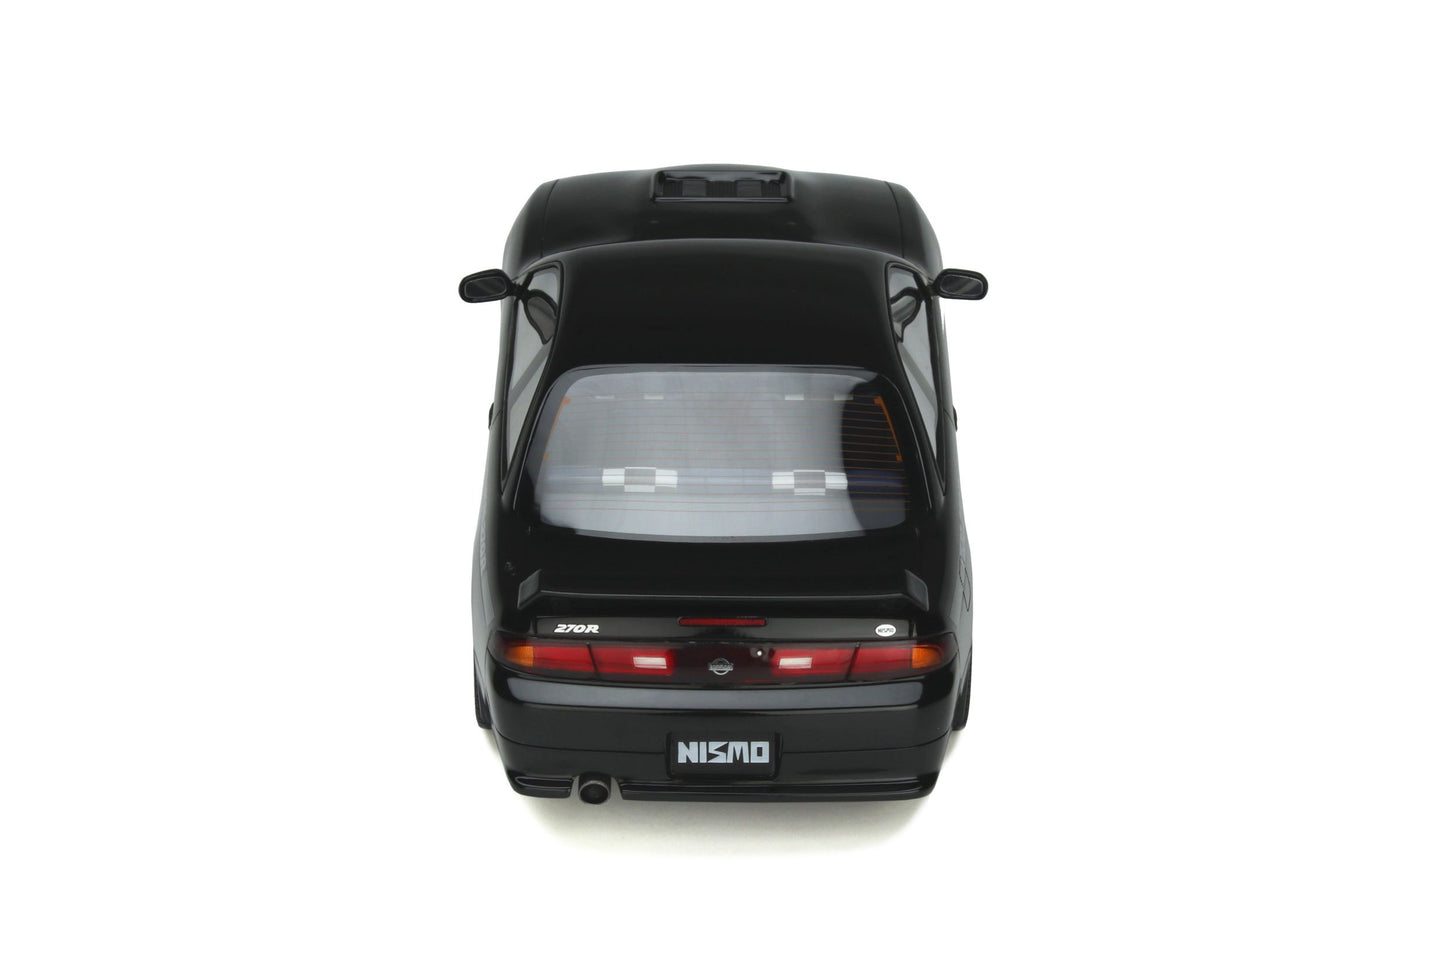 OttOmobile - Nissan Silvia (S14) Nismo 270R (1994) (Black) 1:18 Scale Model Car